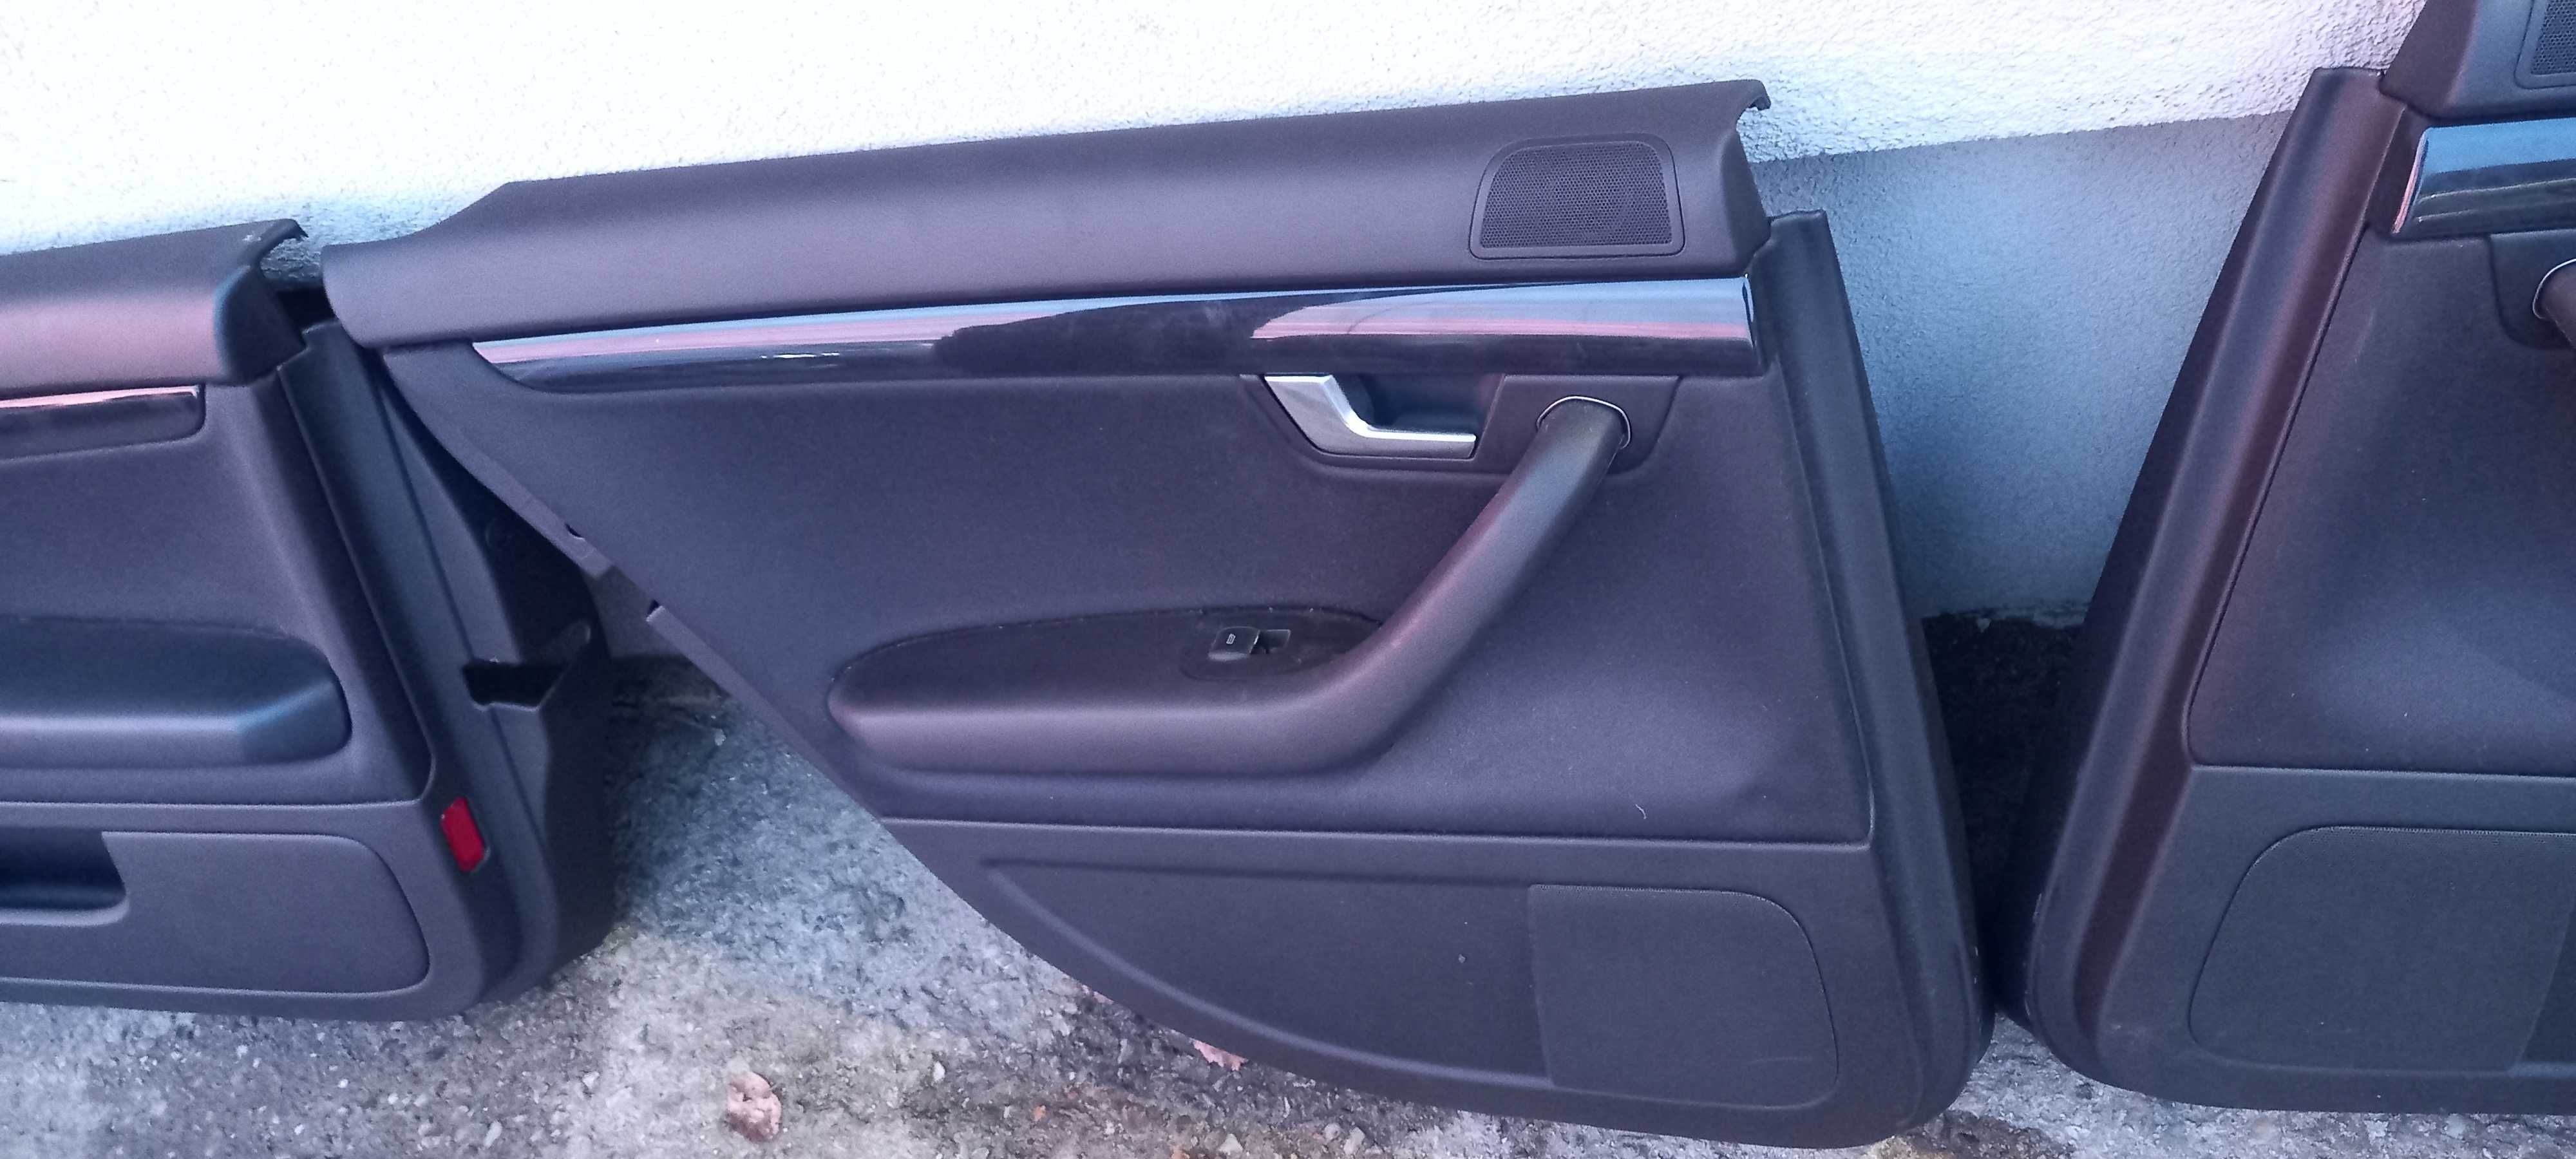 Boczki tapicerka drzwi Audi A4 B6 kpl el.szyby x4